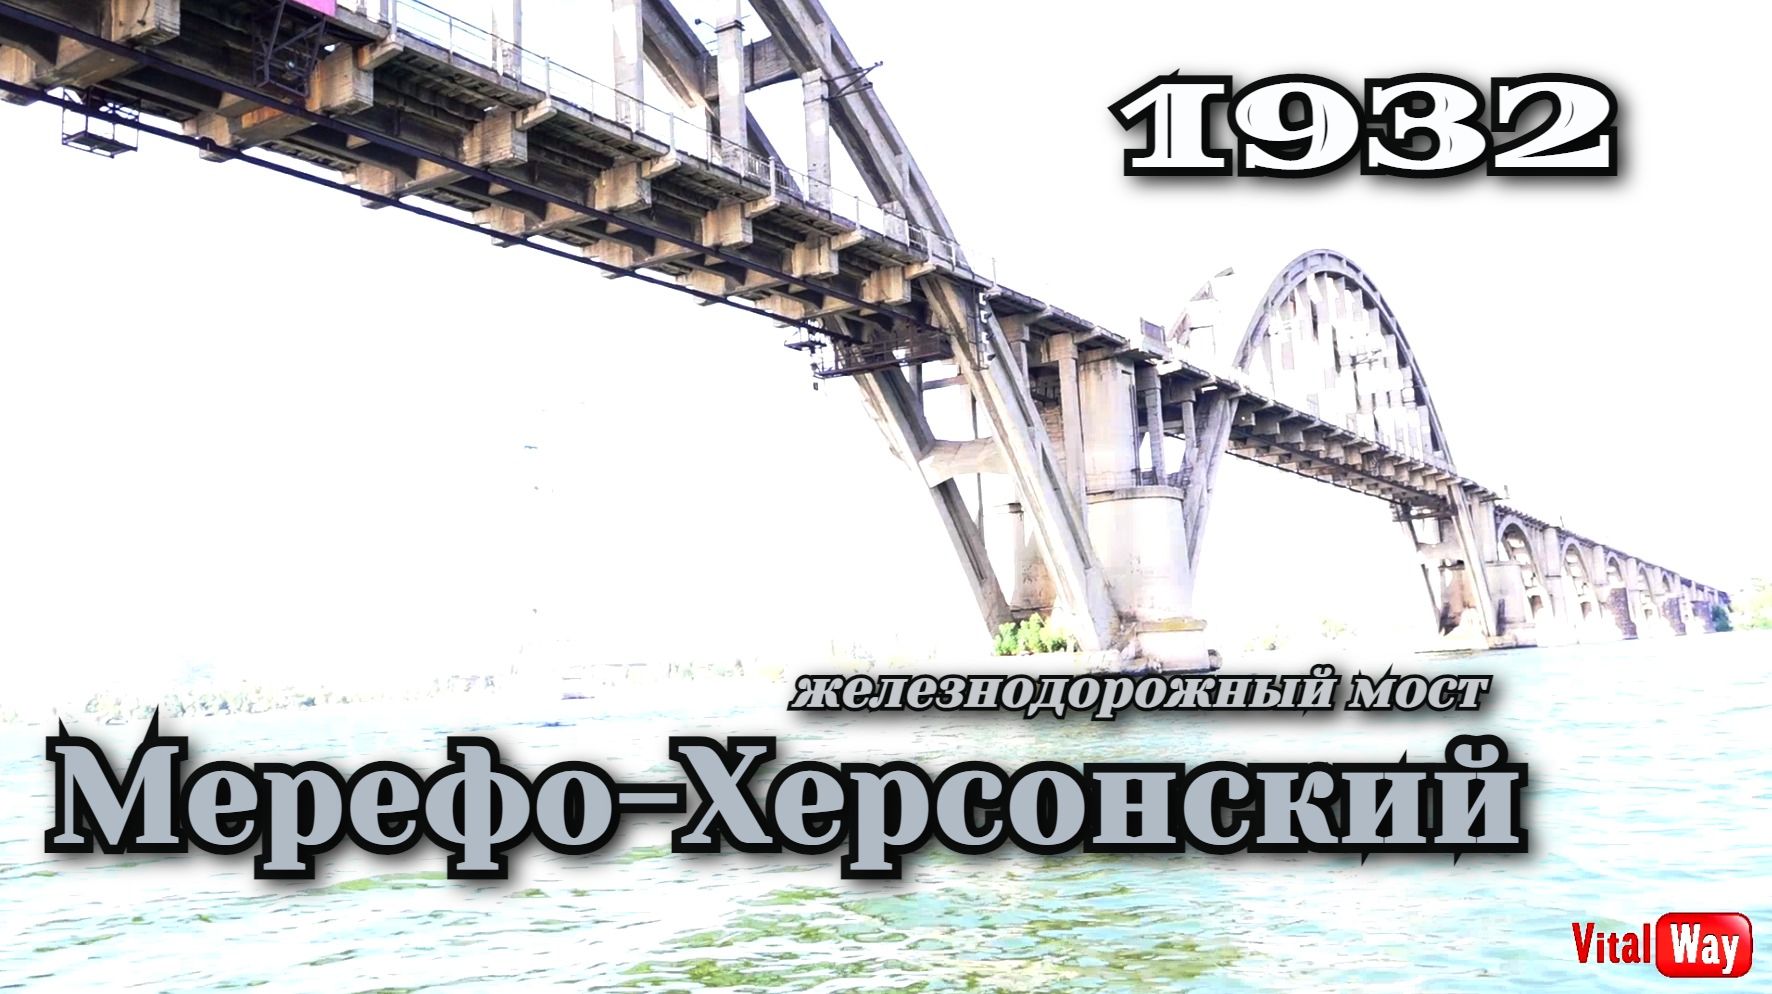 Мерефо-Херсонский железнодорожный мост Днепропетровска